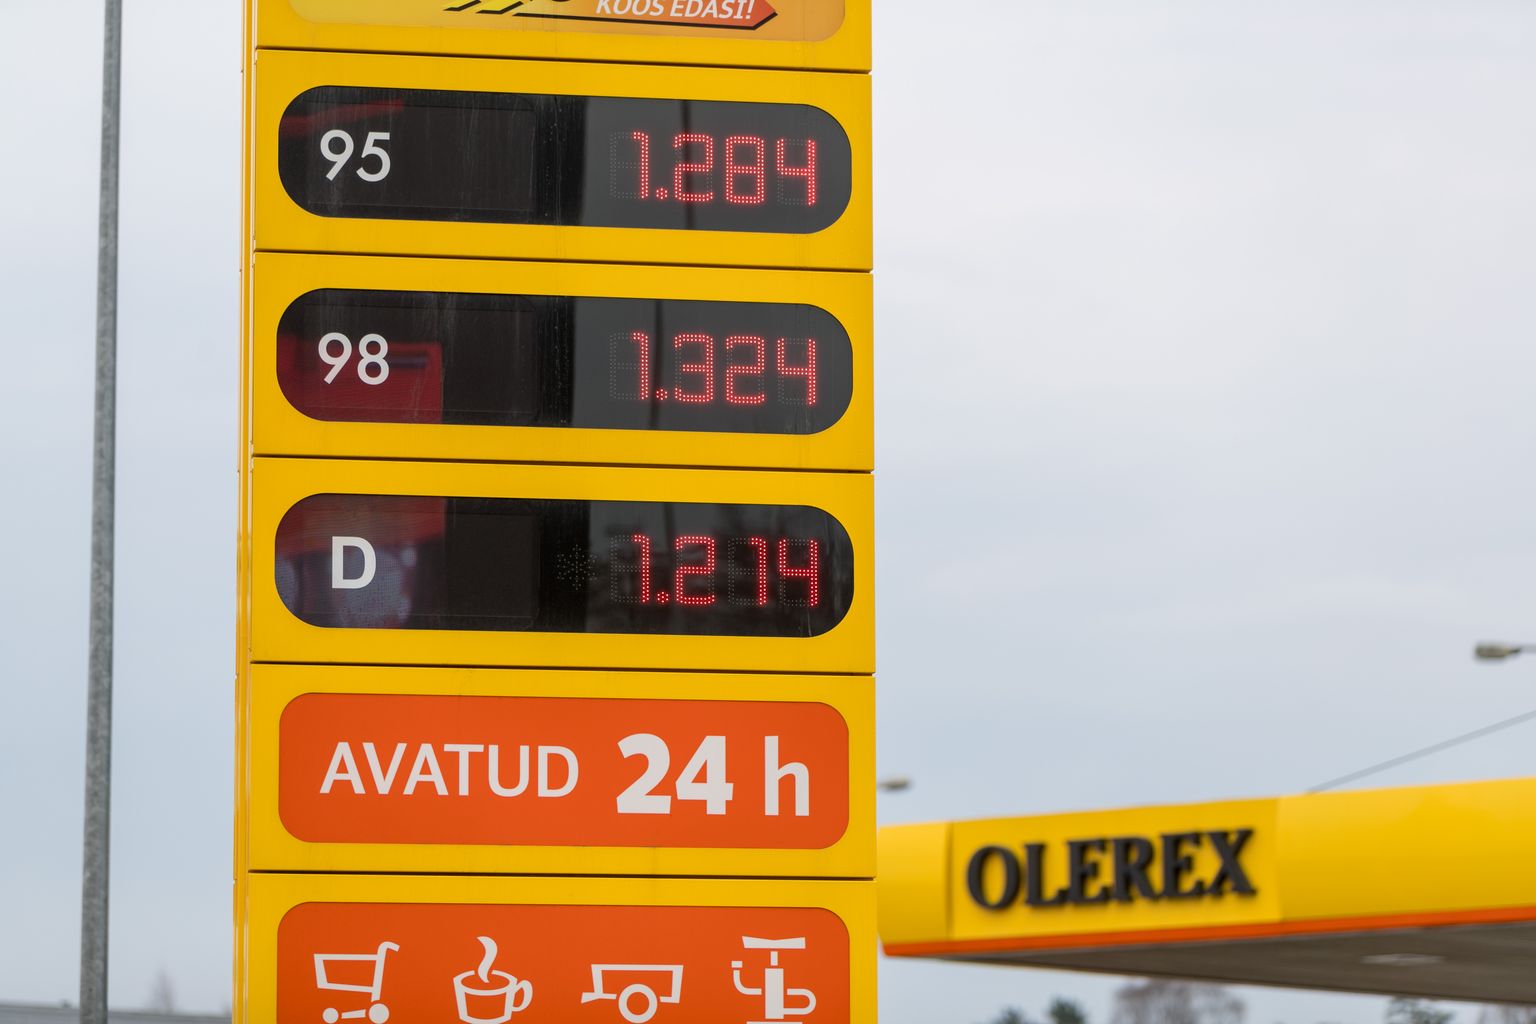 Tallinn, 16.04.2018
Kütusehinnad. Olerex
Fuel prices. Olerex
FOTO: MIHKEL MARIPUU/EESTI MEEDIA